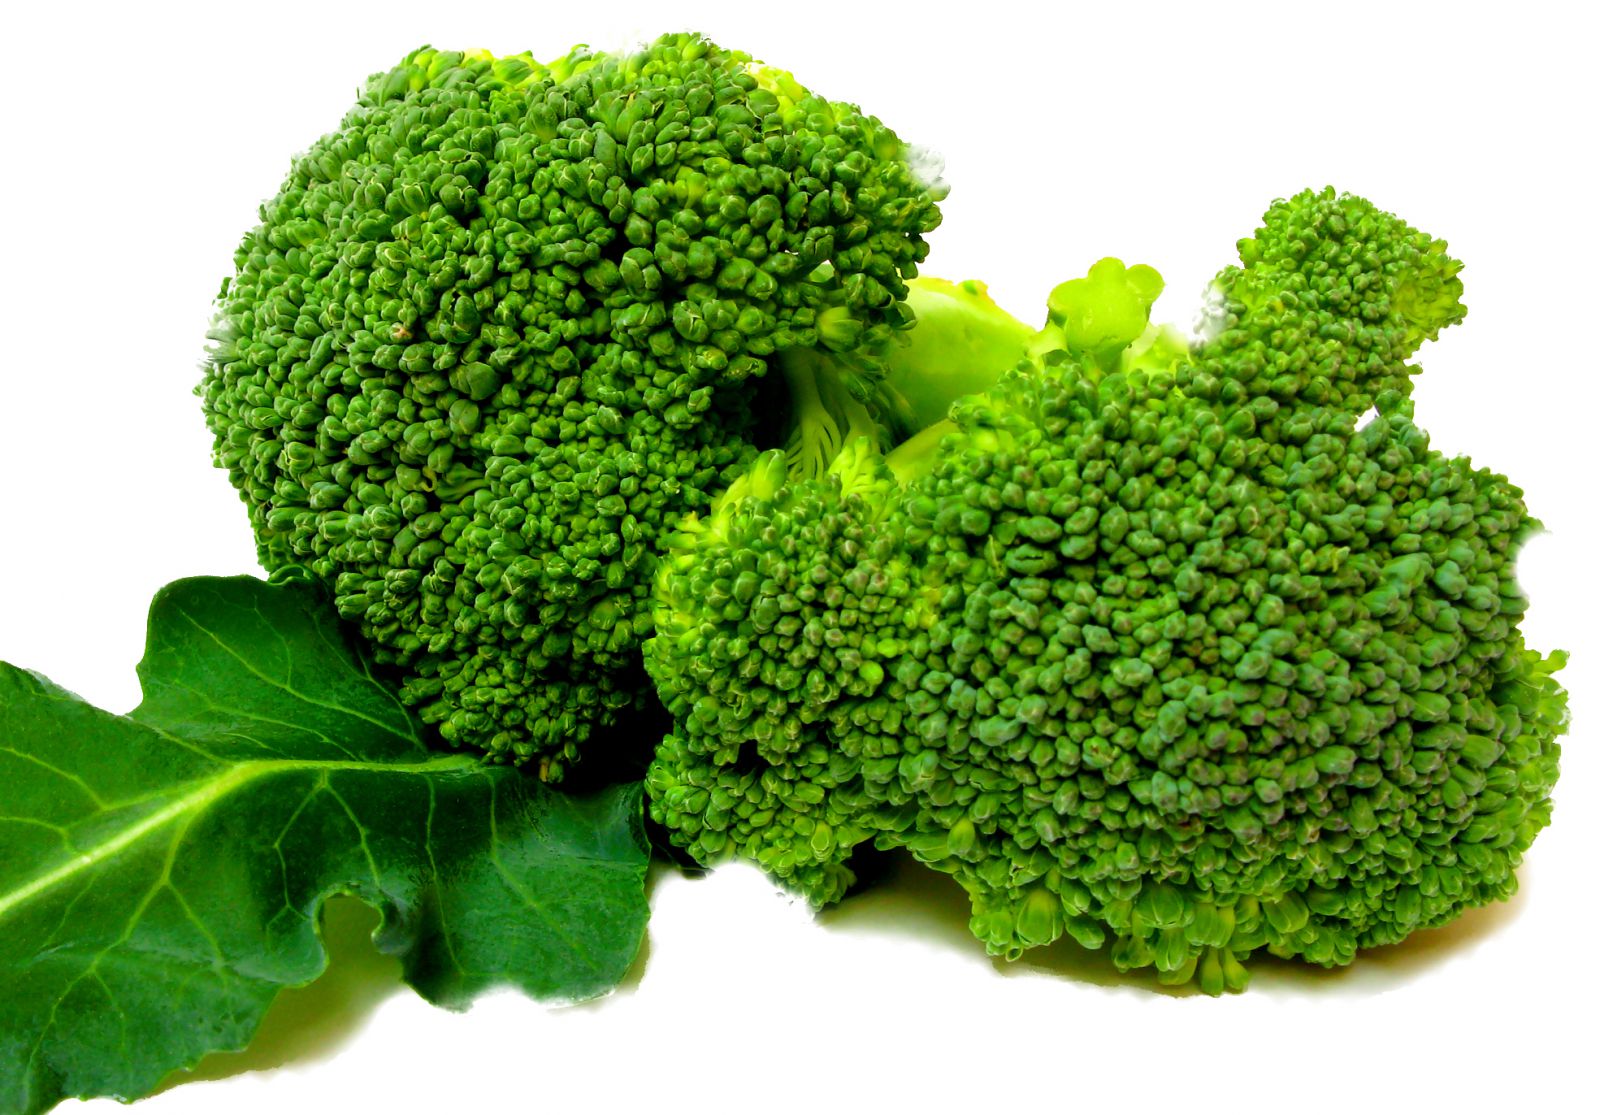 http://polaberita.blogspot.com/2015/02/pengertian-dan-manfaat-brokoli.html